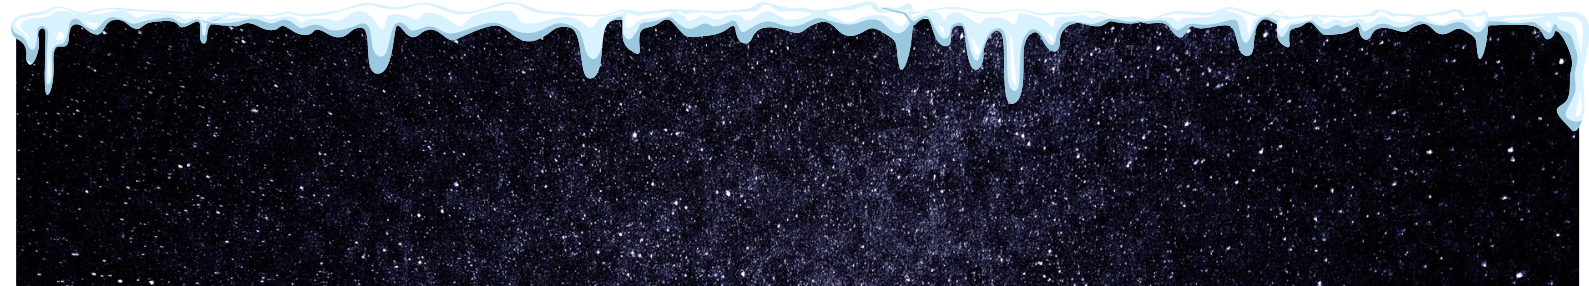 Bild vom Universum mit Schnee